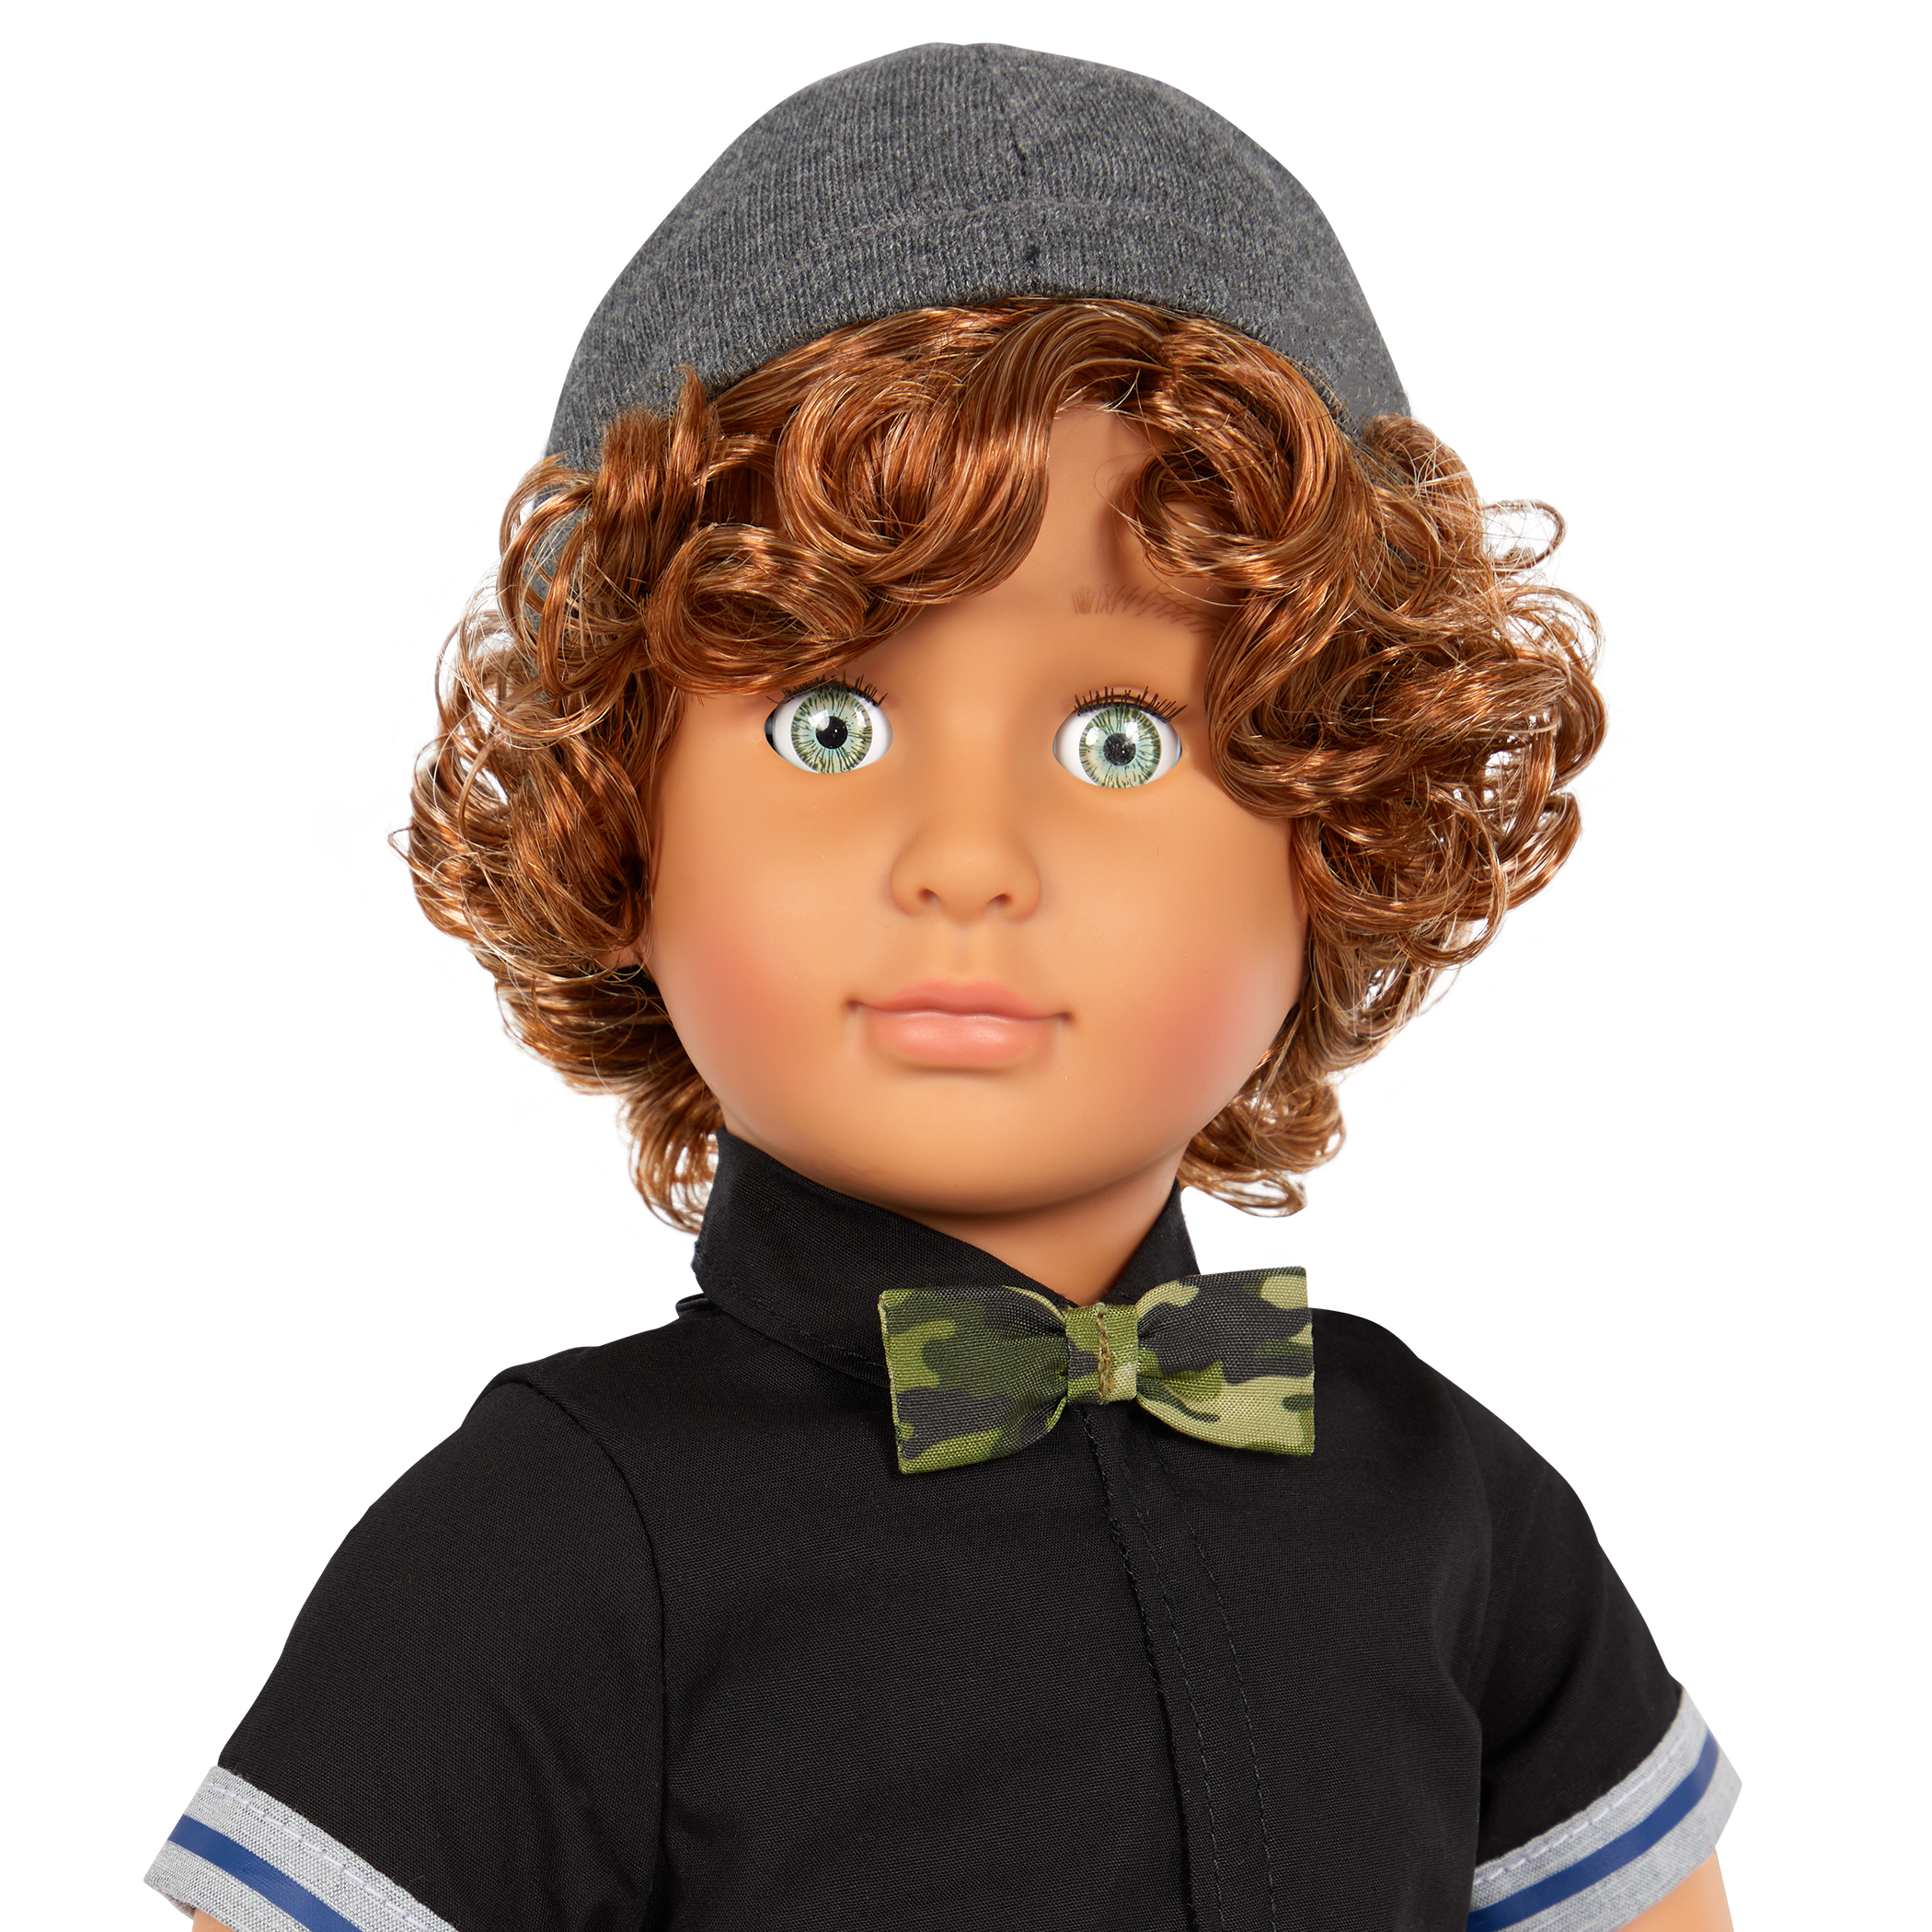 Our Generation 18-inch Boy Doll Lorenz